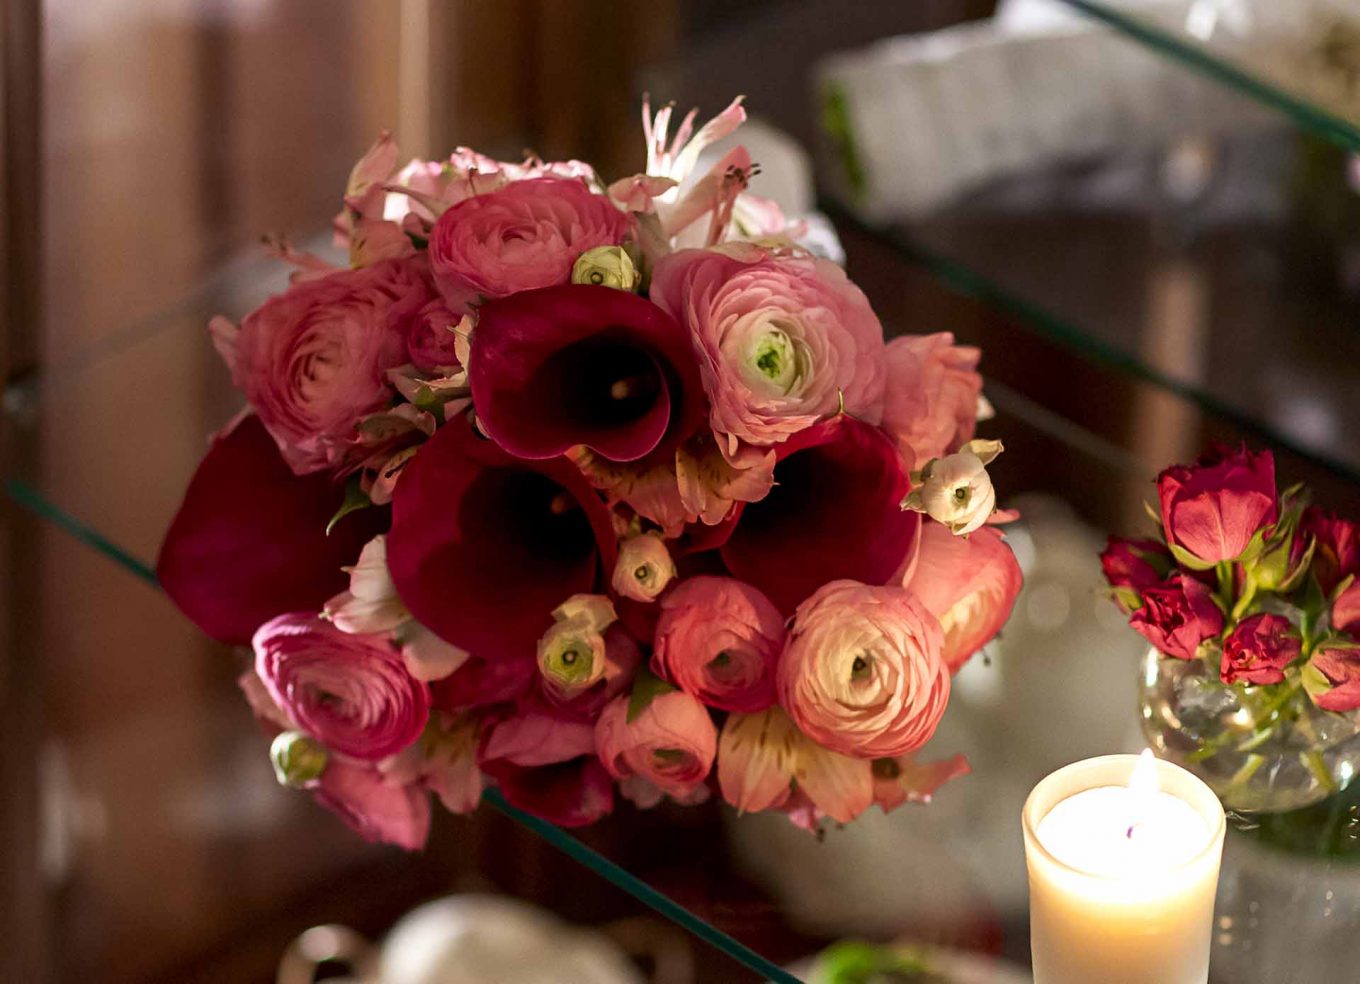 Imagem: O buquê da noiva é composto por flores Callas, Ranúnculo e a Alstroemeria. Foto: Raphael Günther/Bespoke Content.